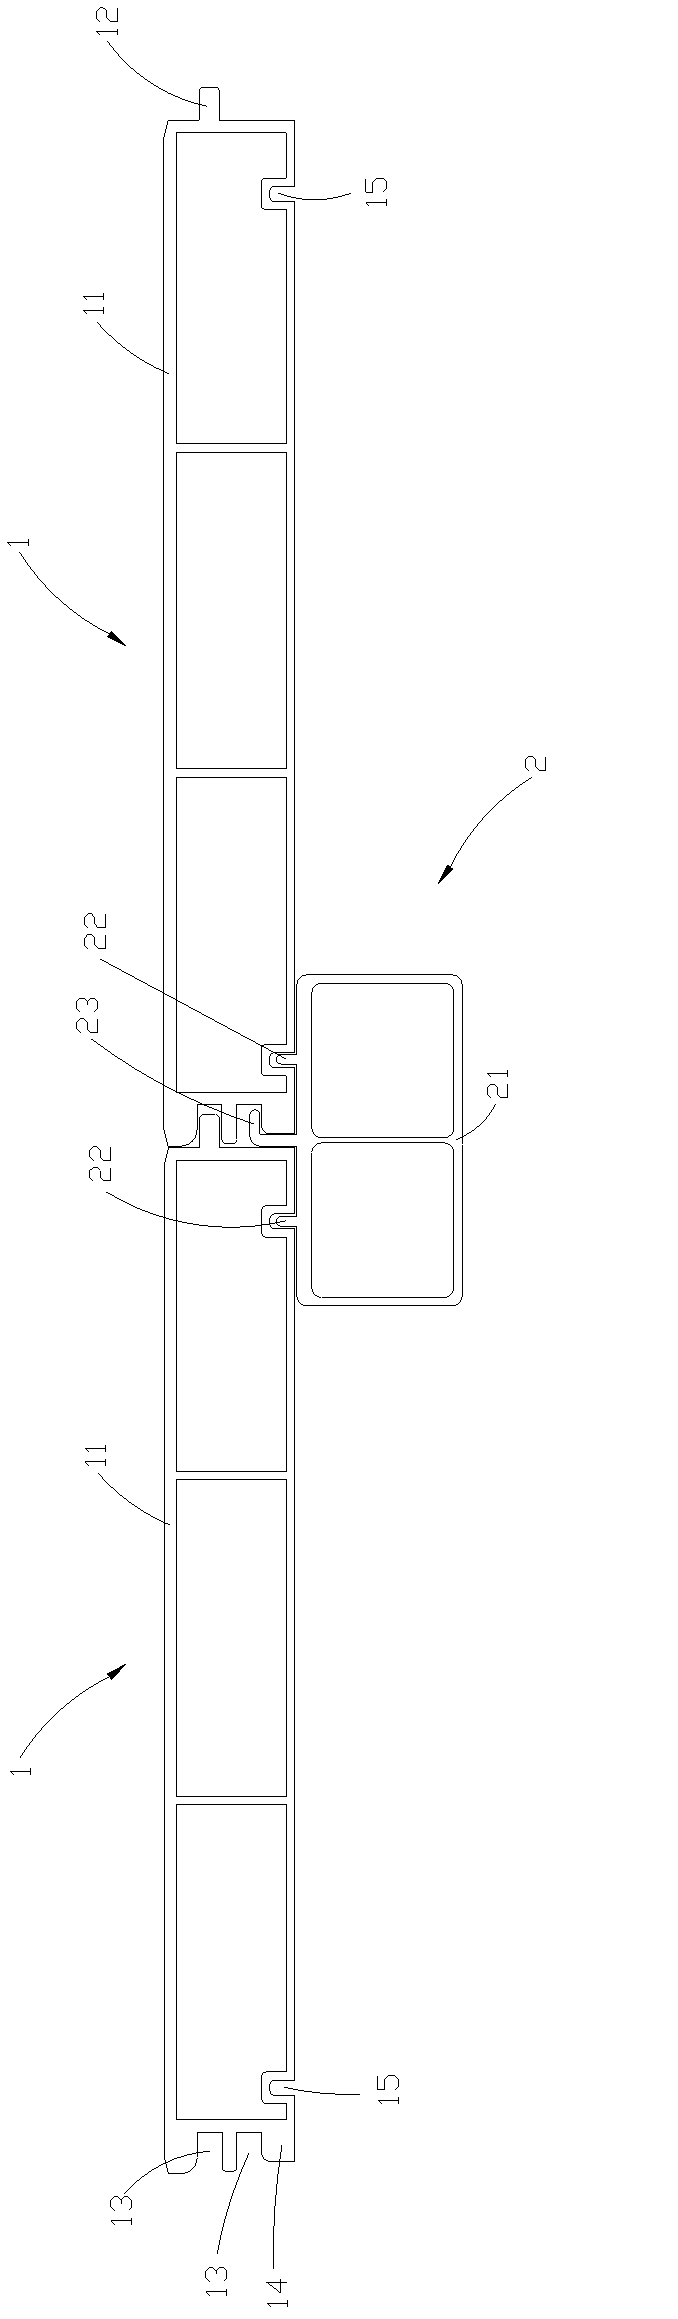 Aluminum alloy floor and metal keel arrangement structure